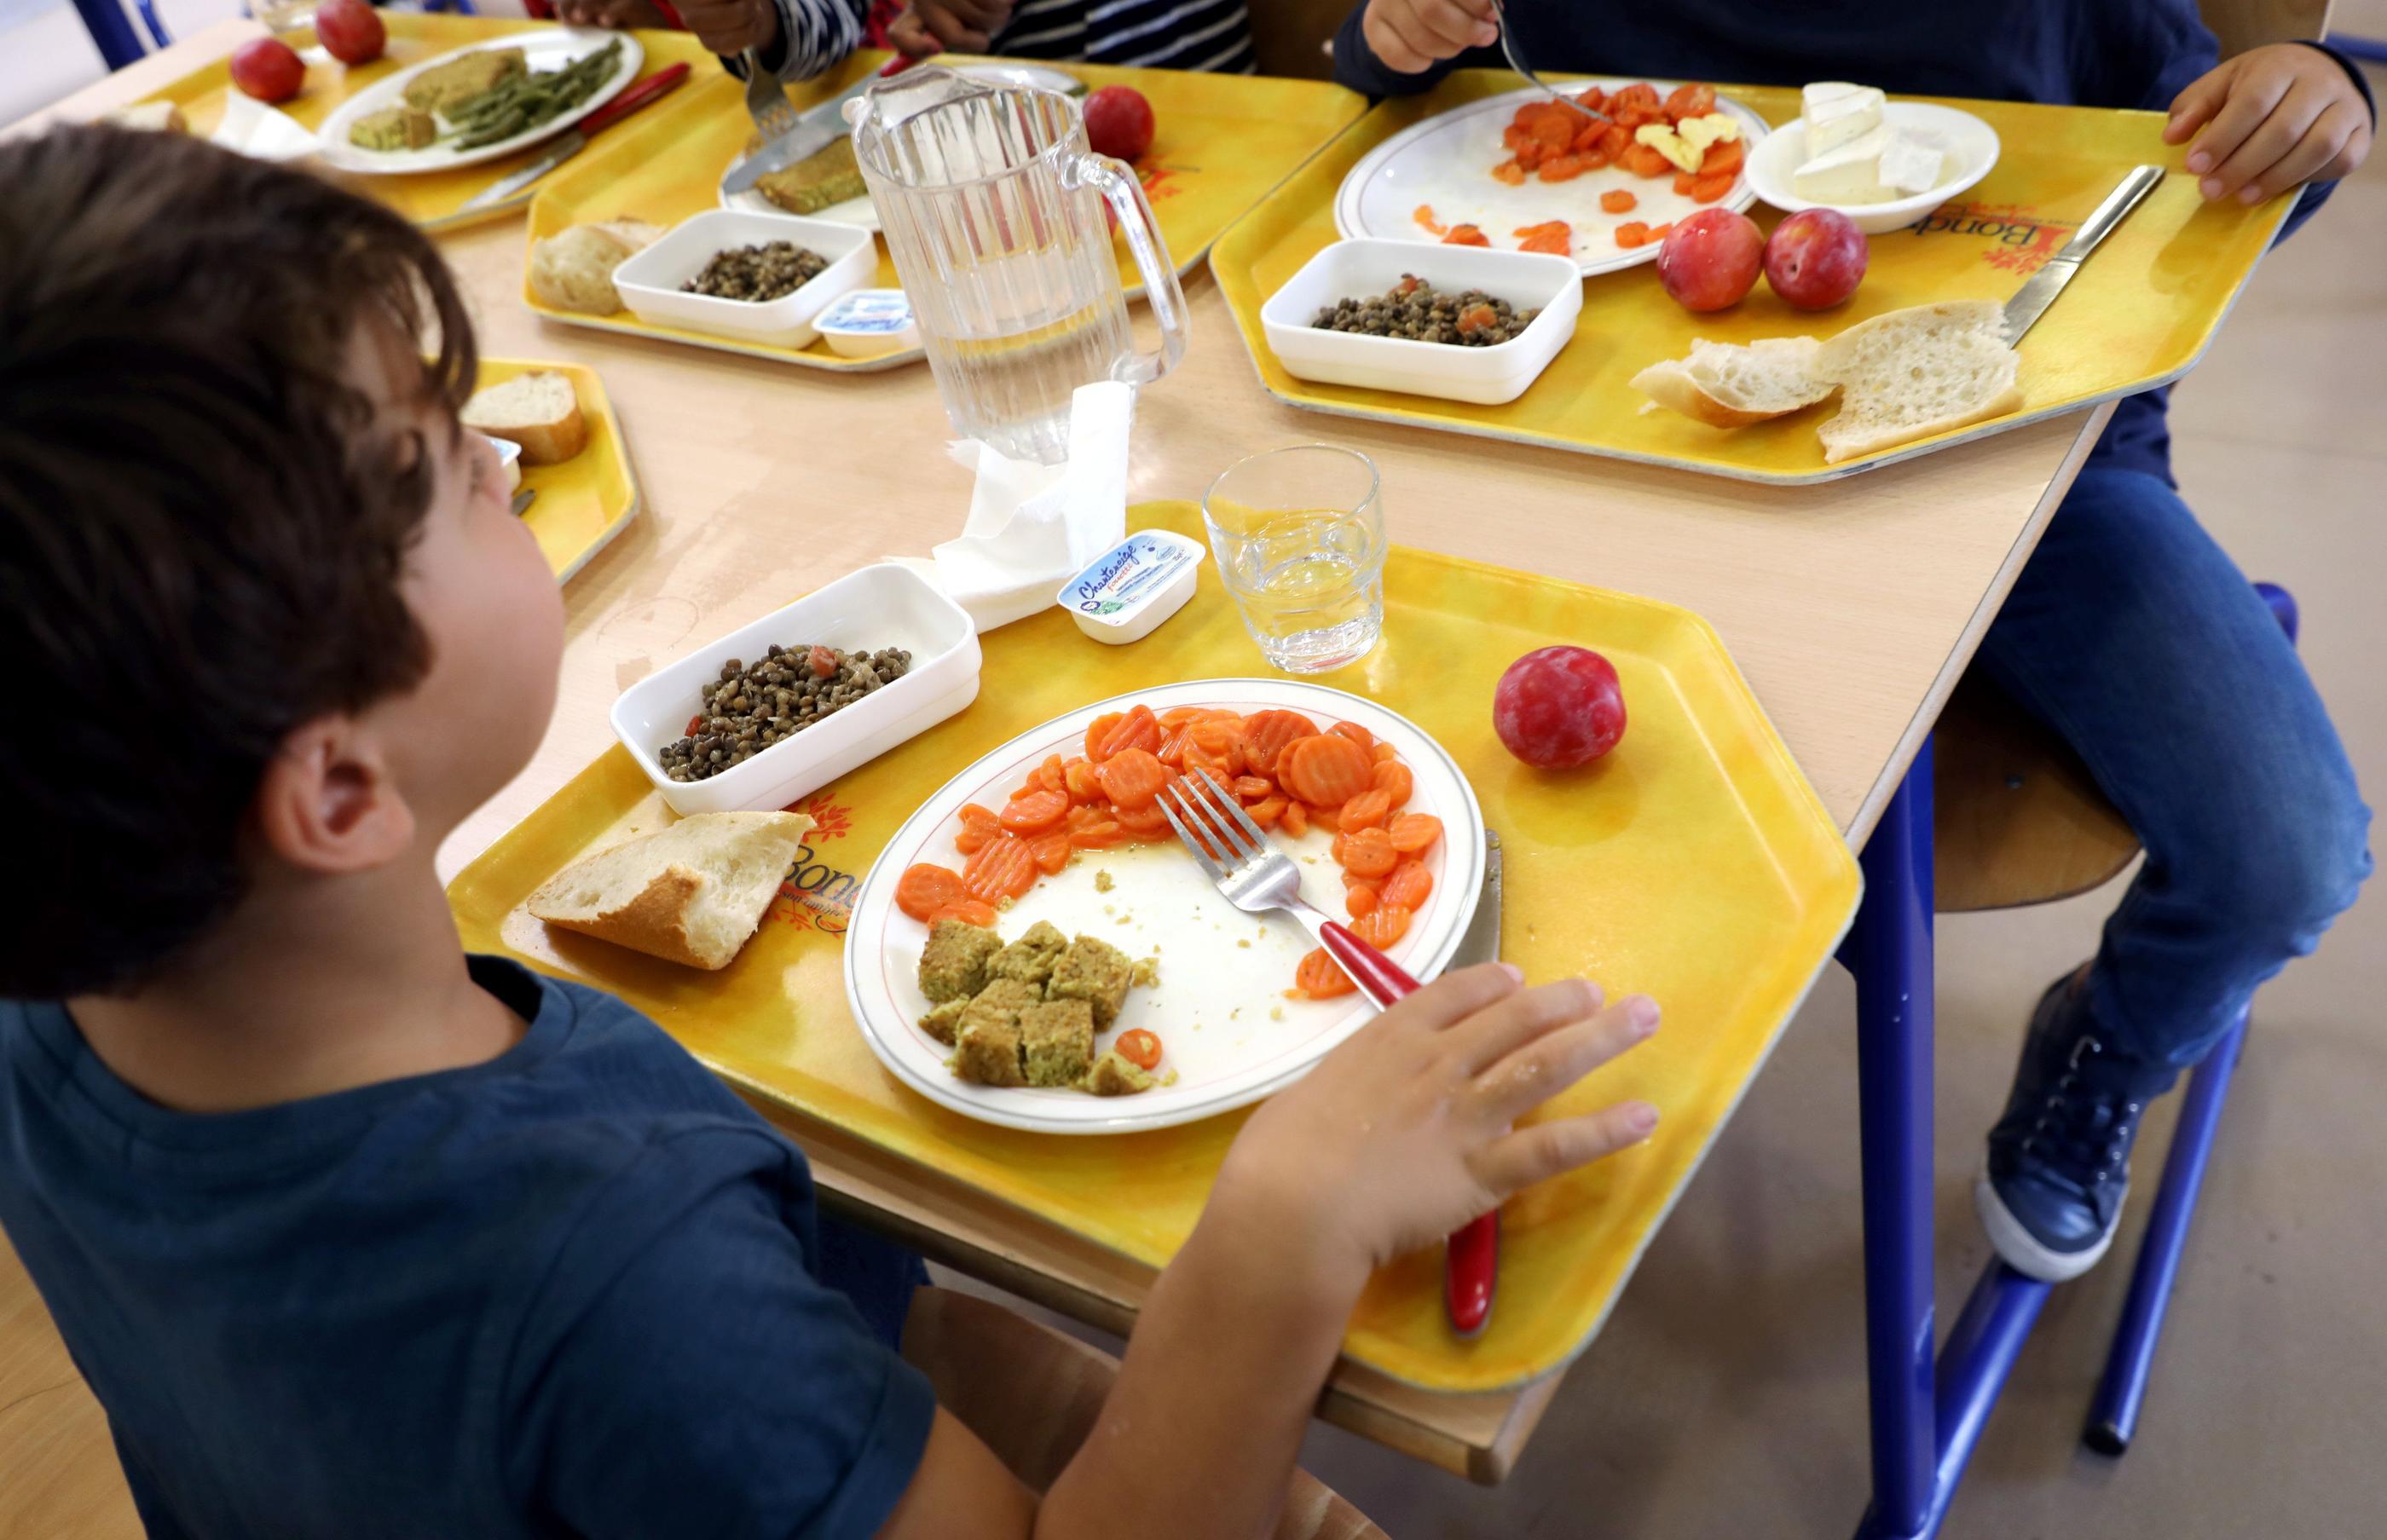 Dans certains arrondissements, des enfants se plaignent d'avoir très faim après avoir déjeuné à la cantine scolaire. (Illustration) LP/Jean-Baptiste Quentin